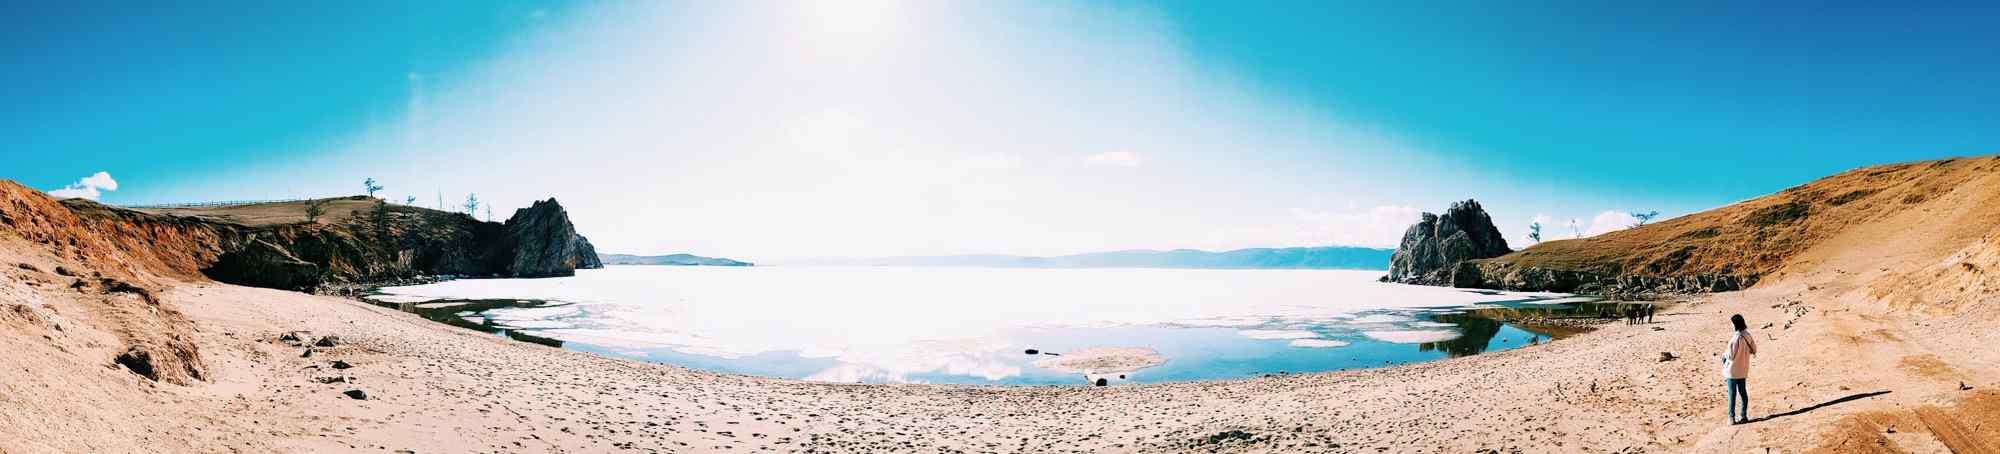 贝加尔湖风景_贝加尔湖风景图片_西伯利亚风景图片_贝加尔湖风景桌面壁纸、手机壁纸_风景图片